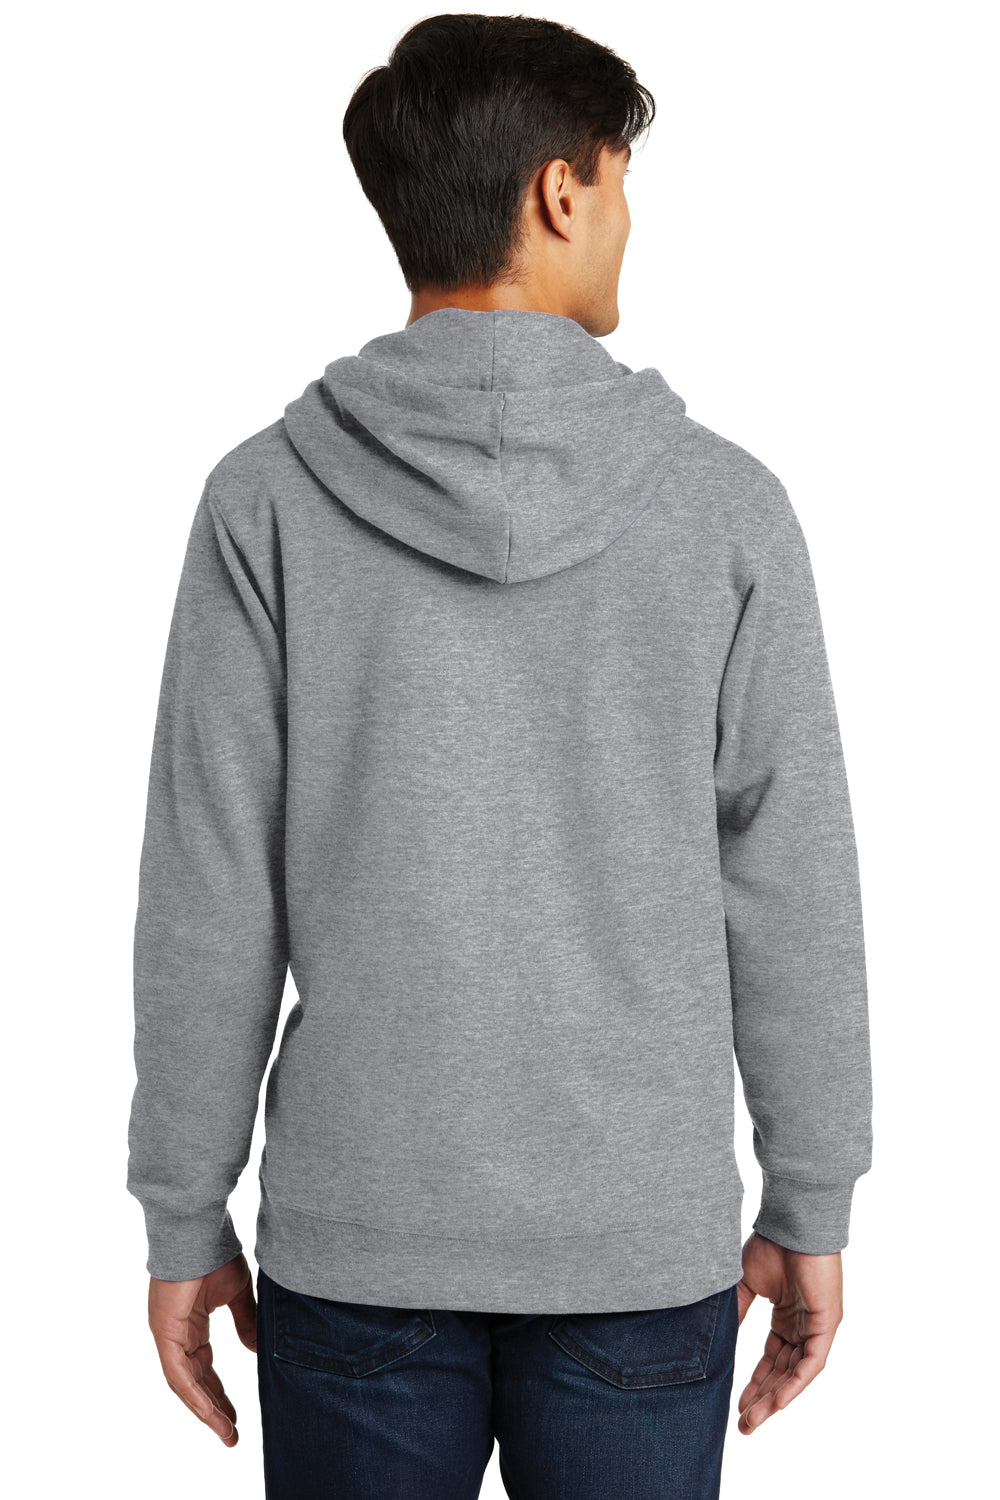 Port & Company PC850ZH Mens Fan Favorite Fleece Full Zip Hooded Sweatshirt Hoodie Heather Grey Back